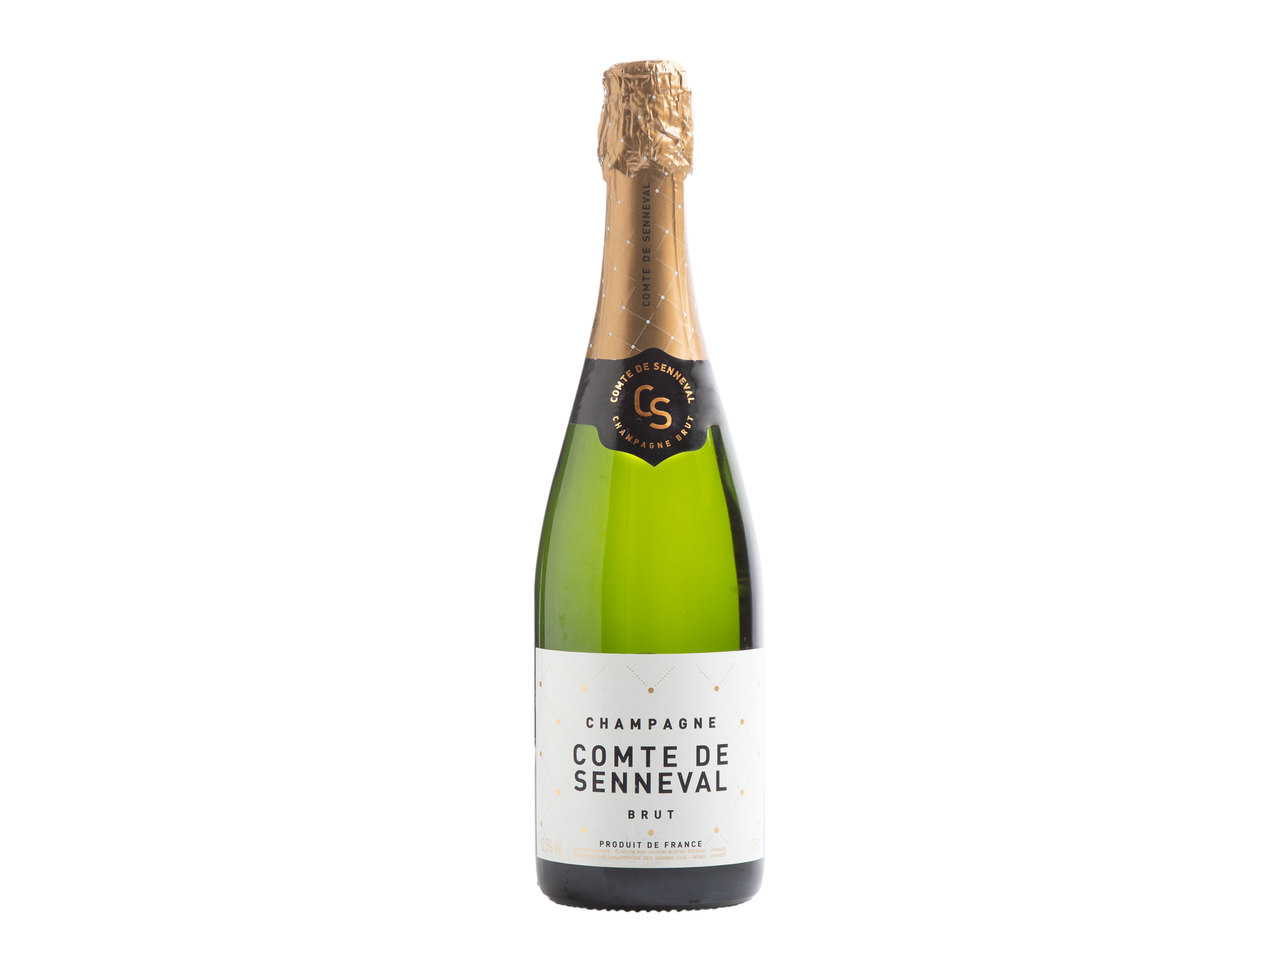 Notre champagne maison: Comte de Senneval Brut